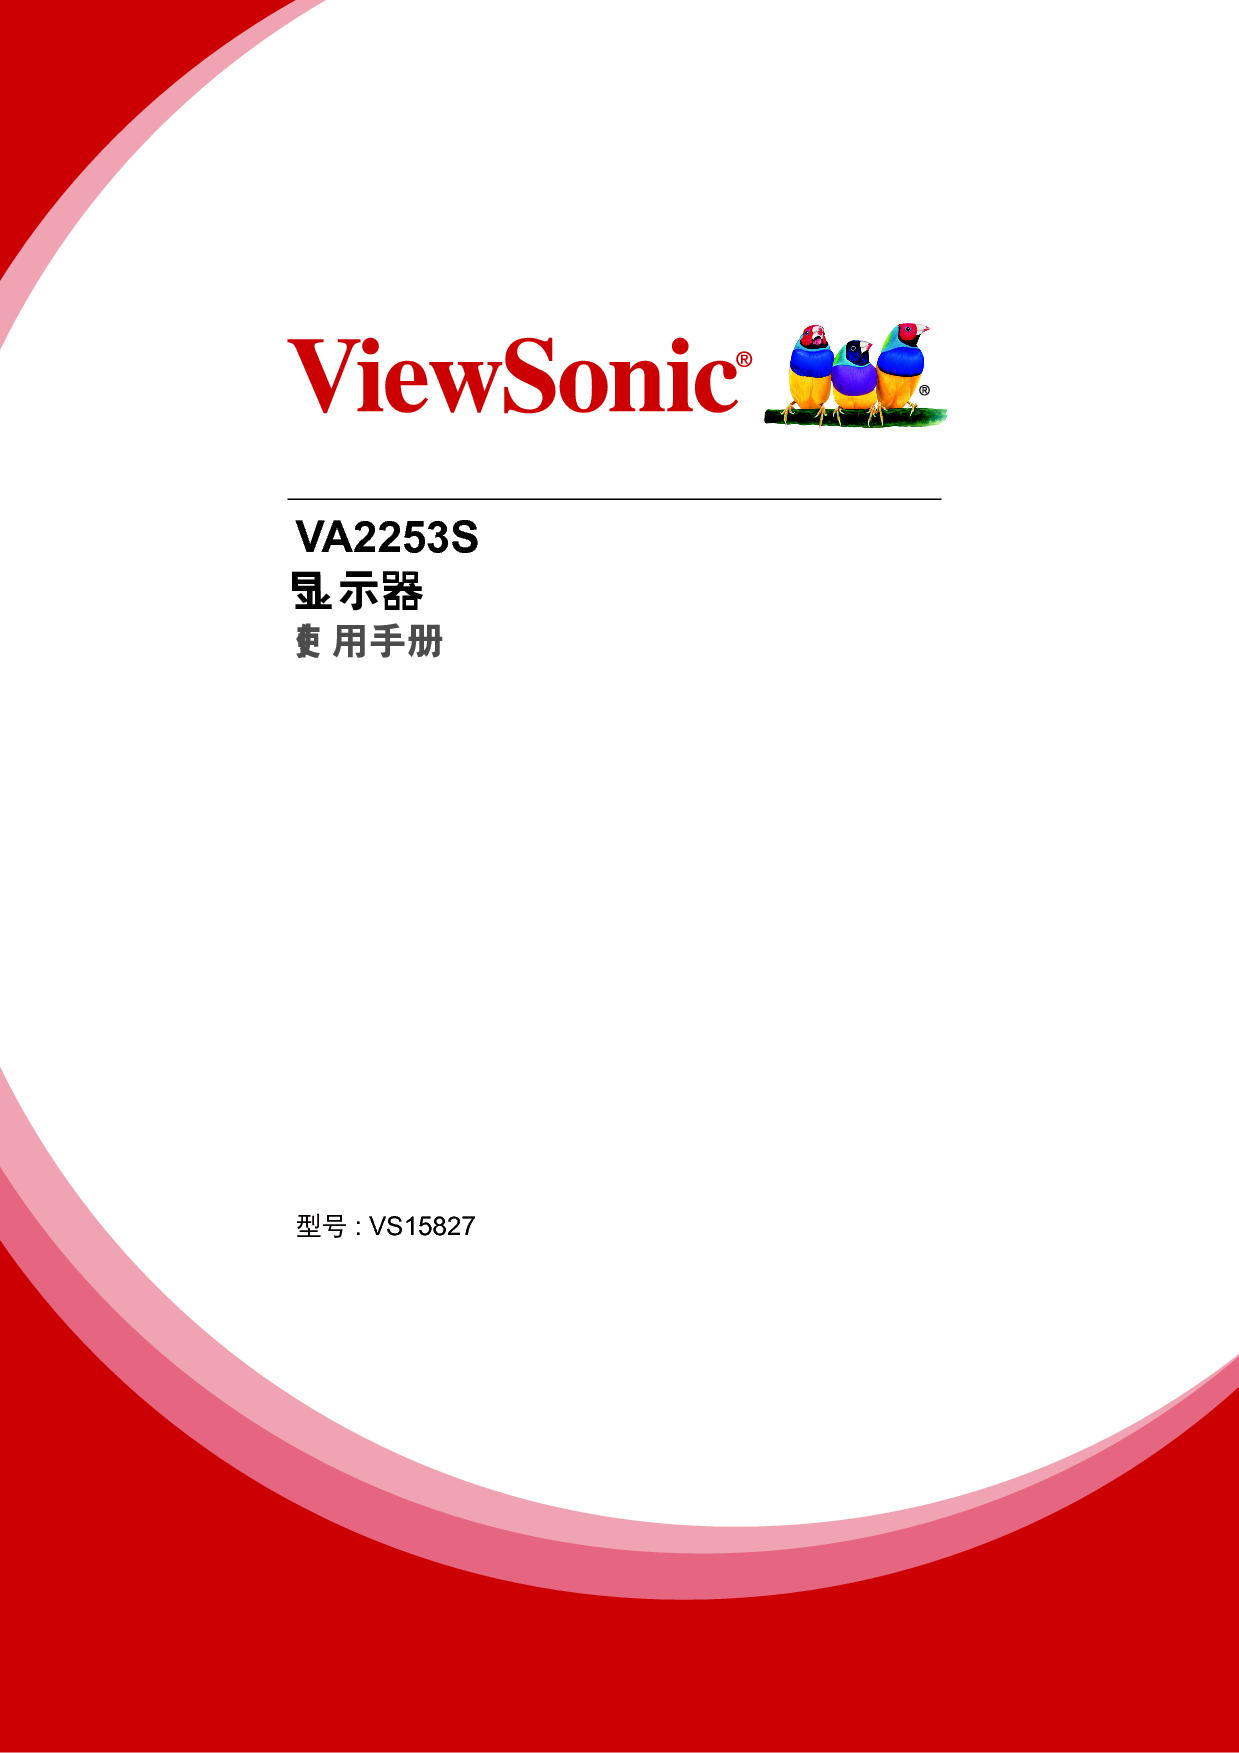 优派 ViewSonic VA2253S 使用手册 封面